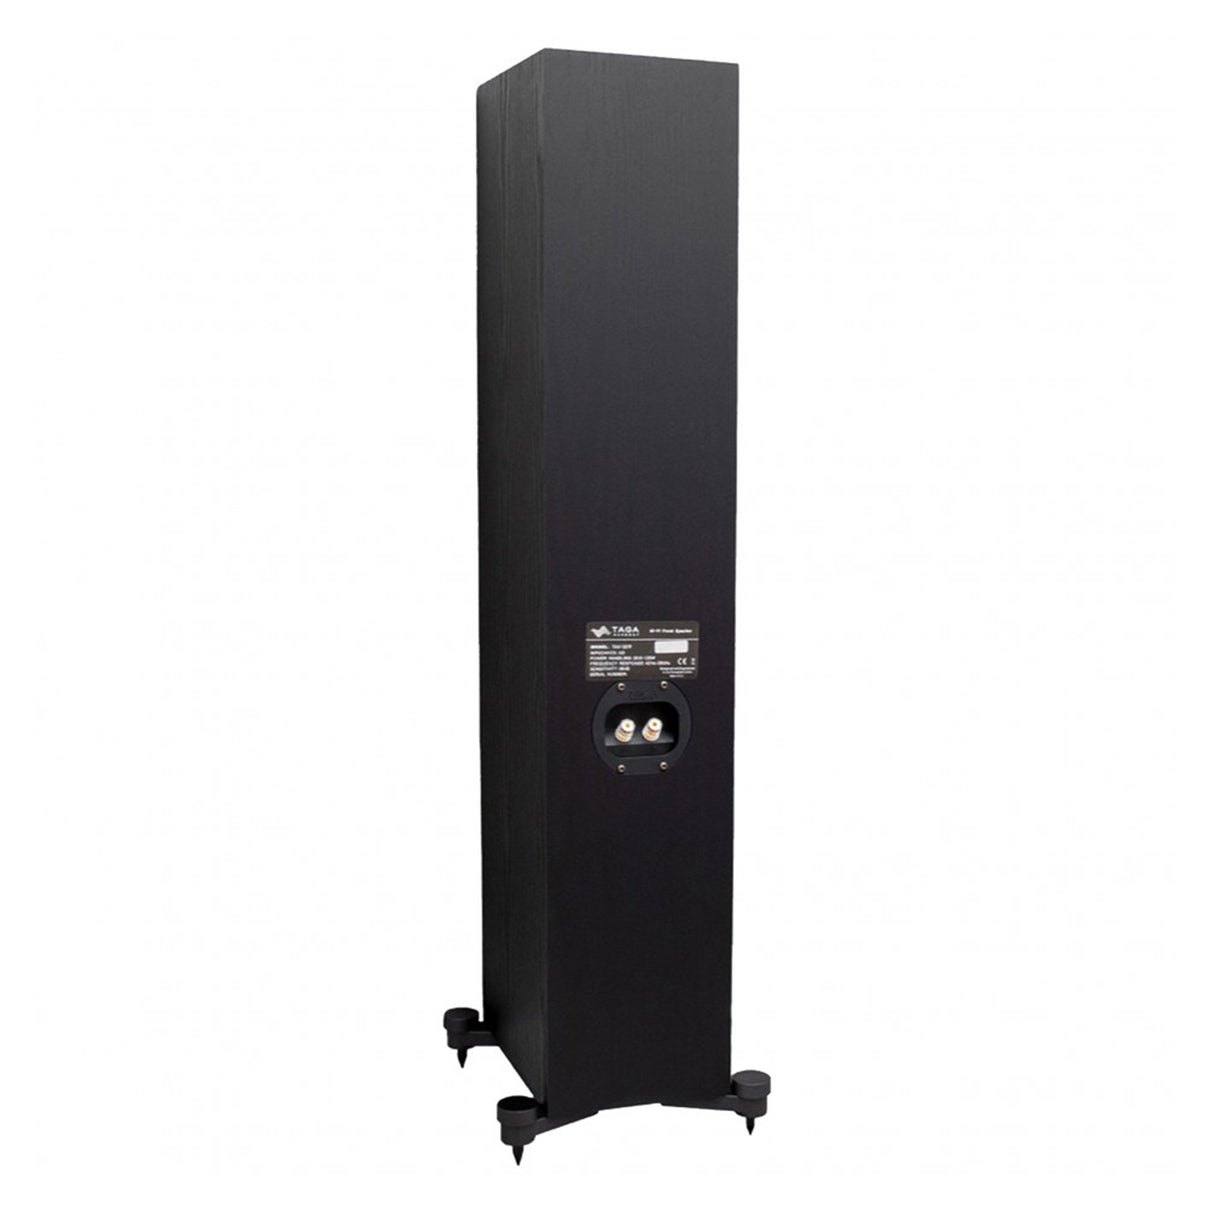 Taga Harmony TAV-507F - Floorstanding Speaker (Pair)